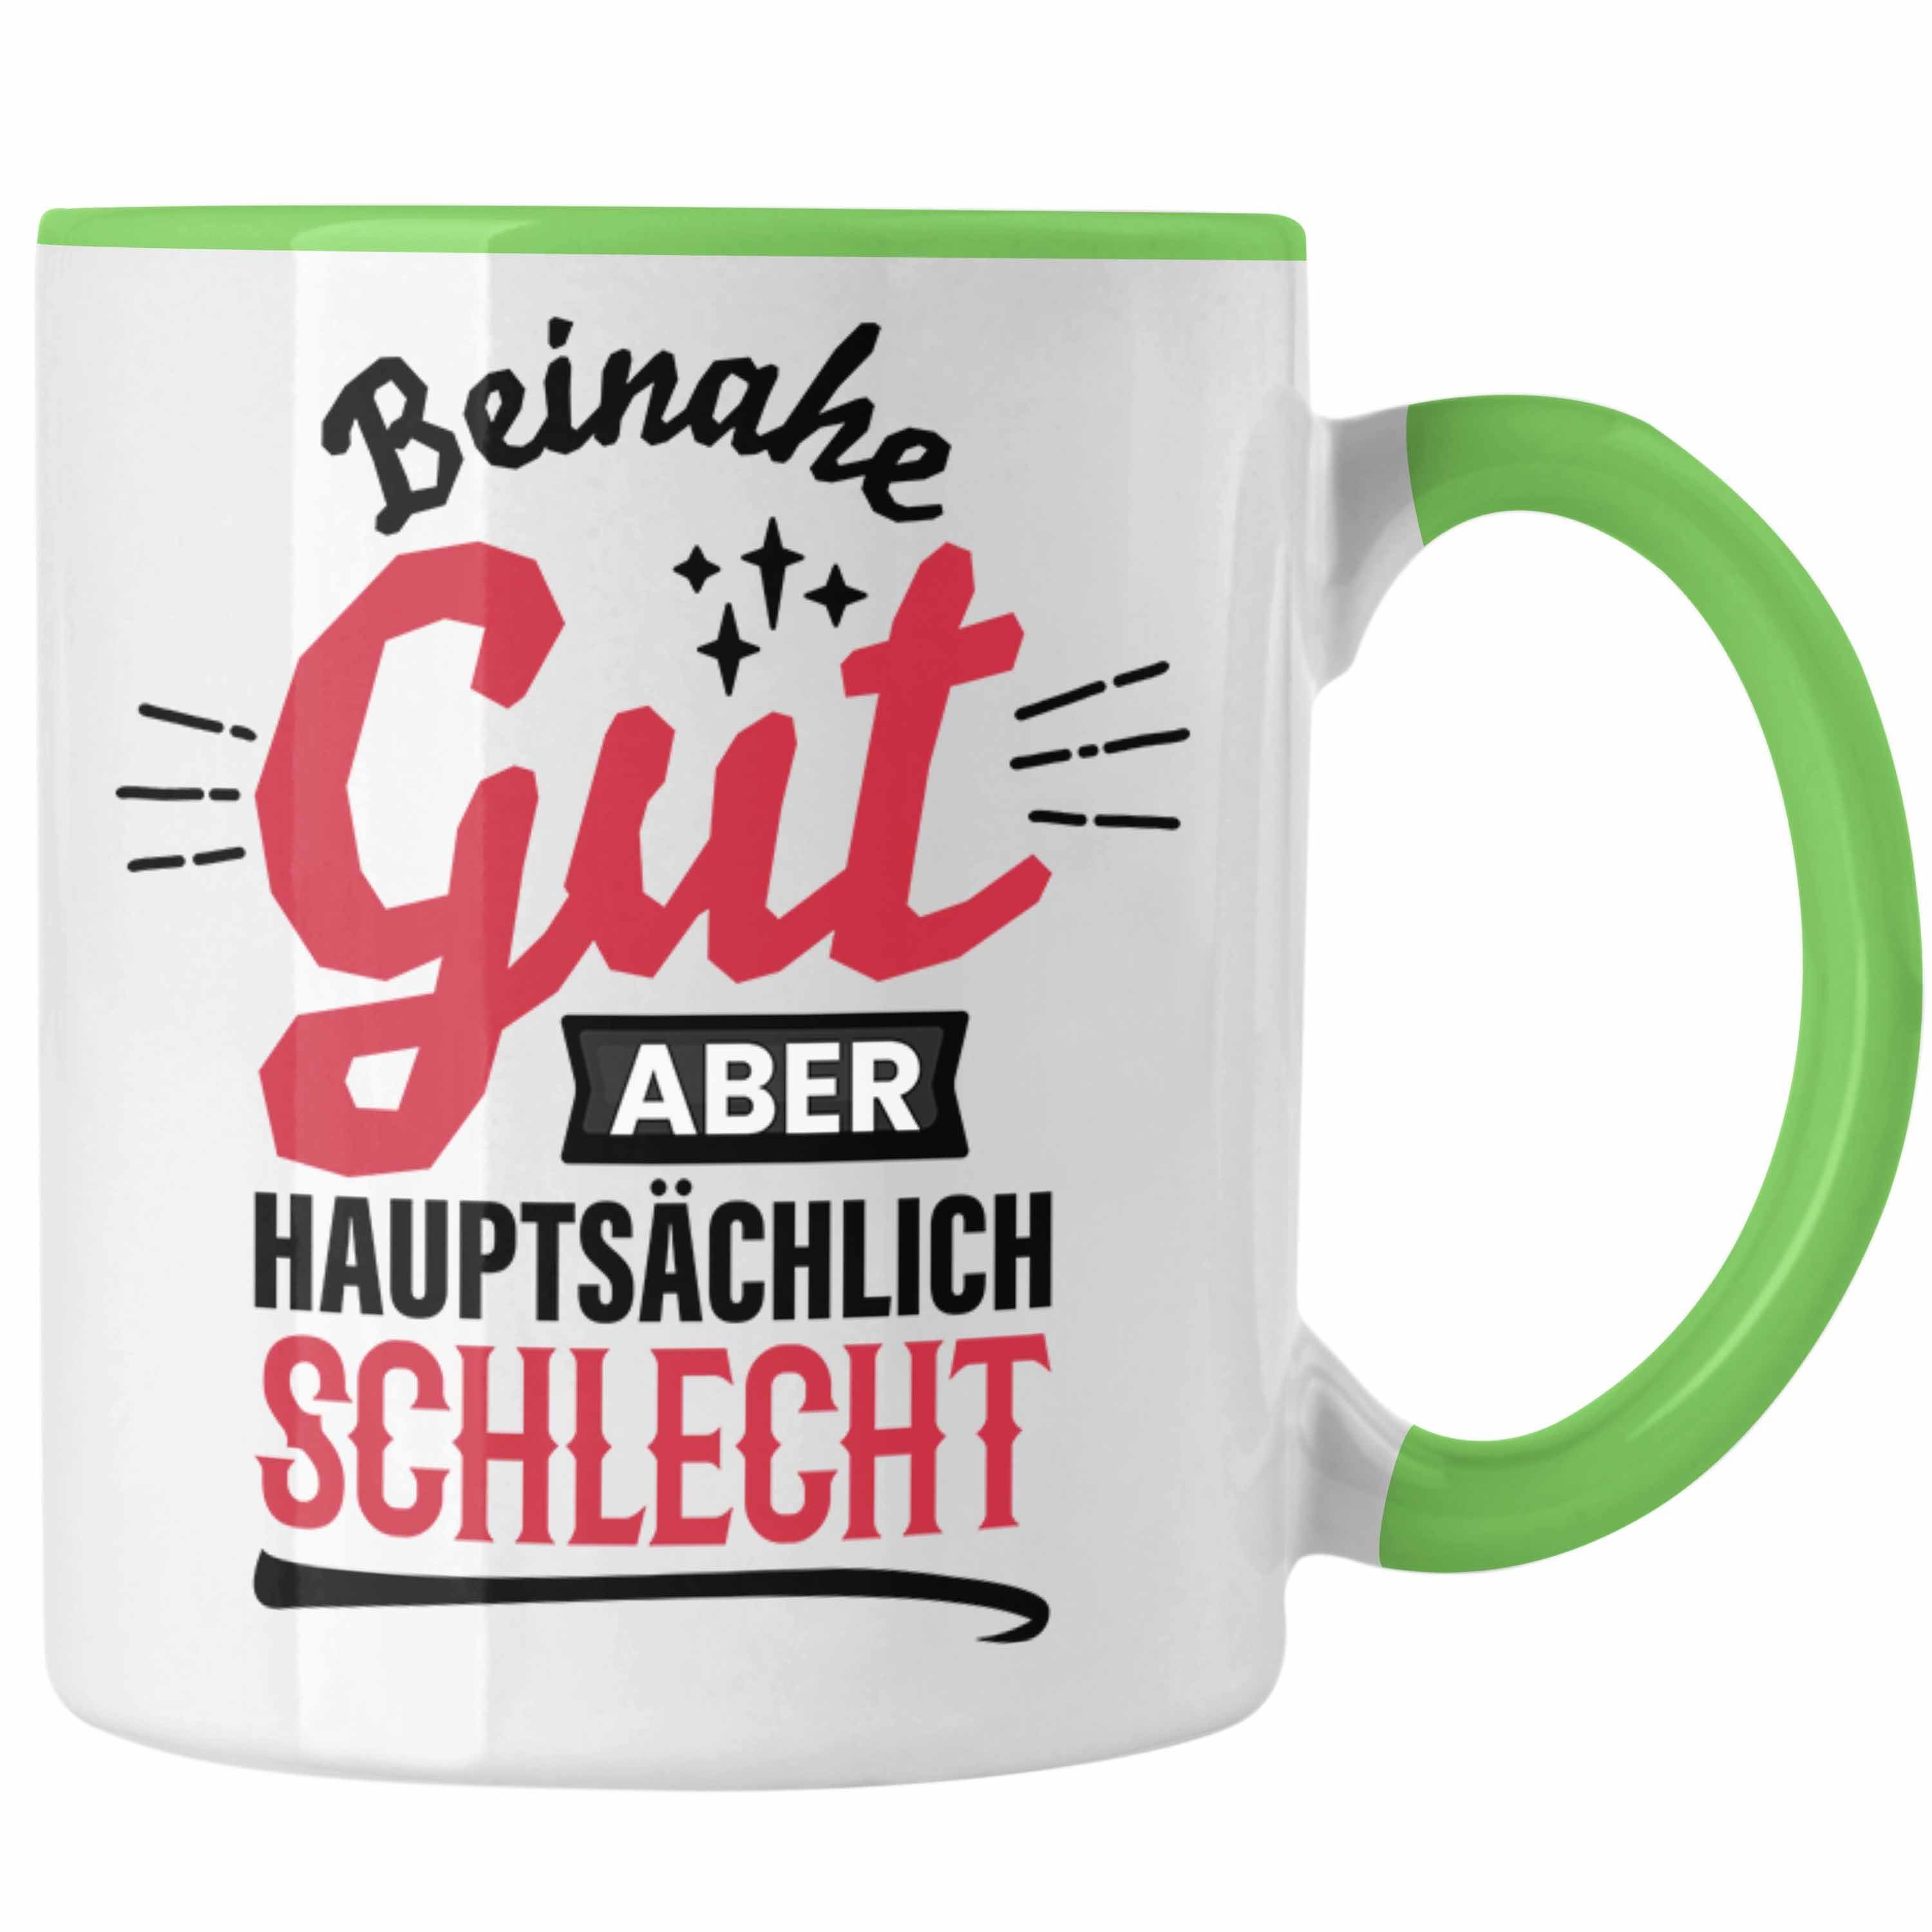 Trendation Tasse Lustiger Spruch Kaffee-Becher Tasse Beinahe Gut Aber Hauptsächlich Sch Grün